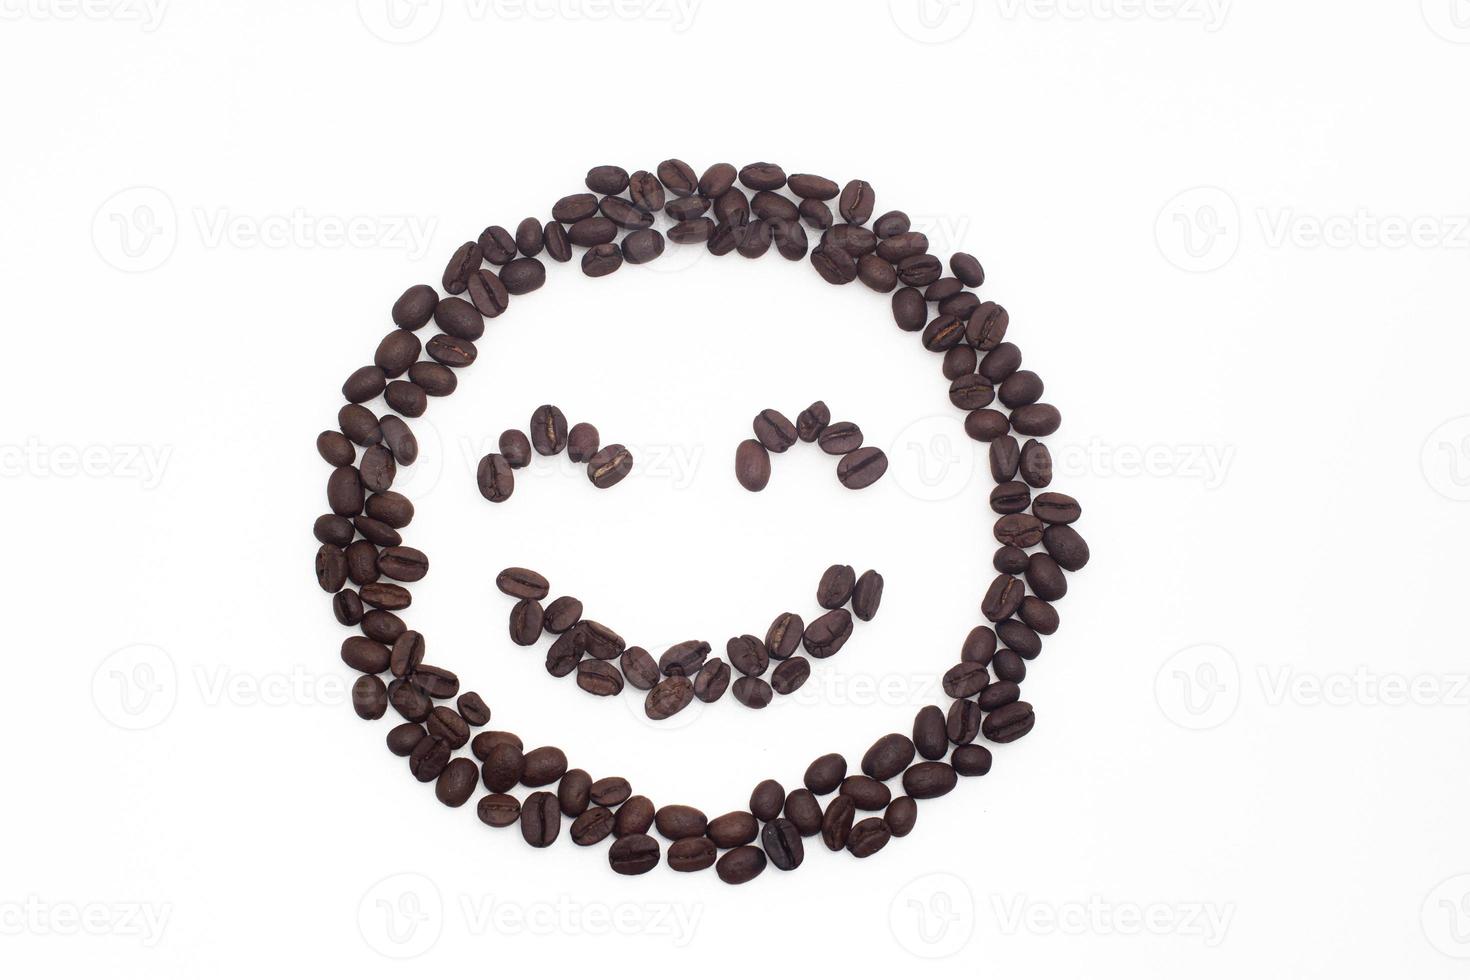 rostade kaffebönor arrangerade i ett leende ansikte på en vit bakgrund. foto